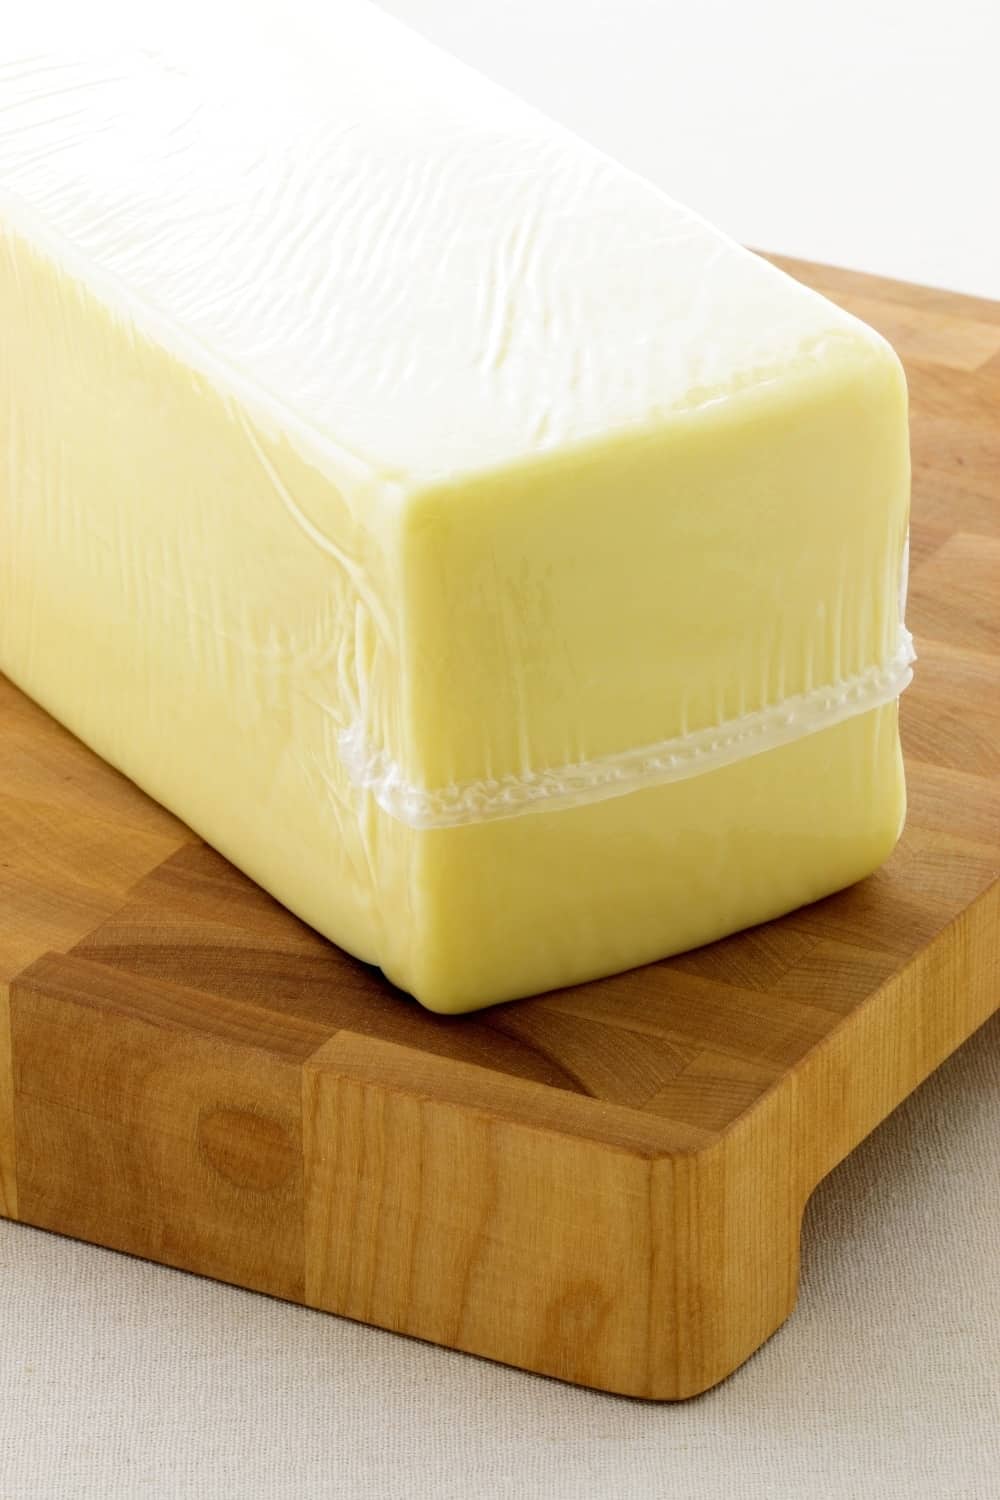 mozzarella cheese block